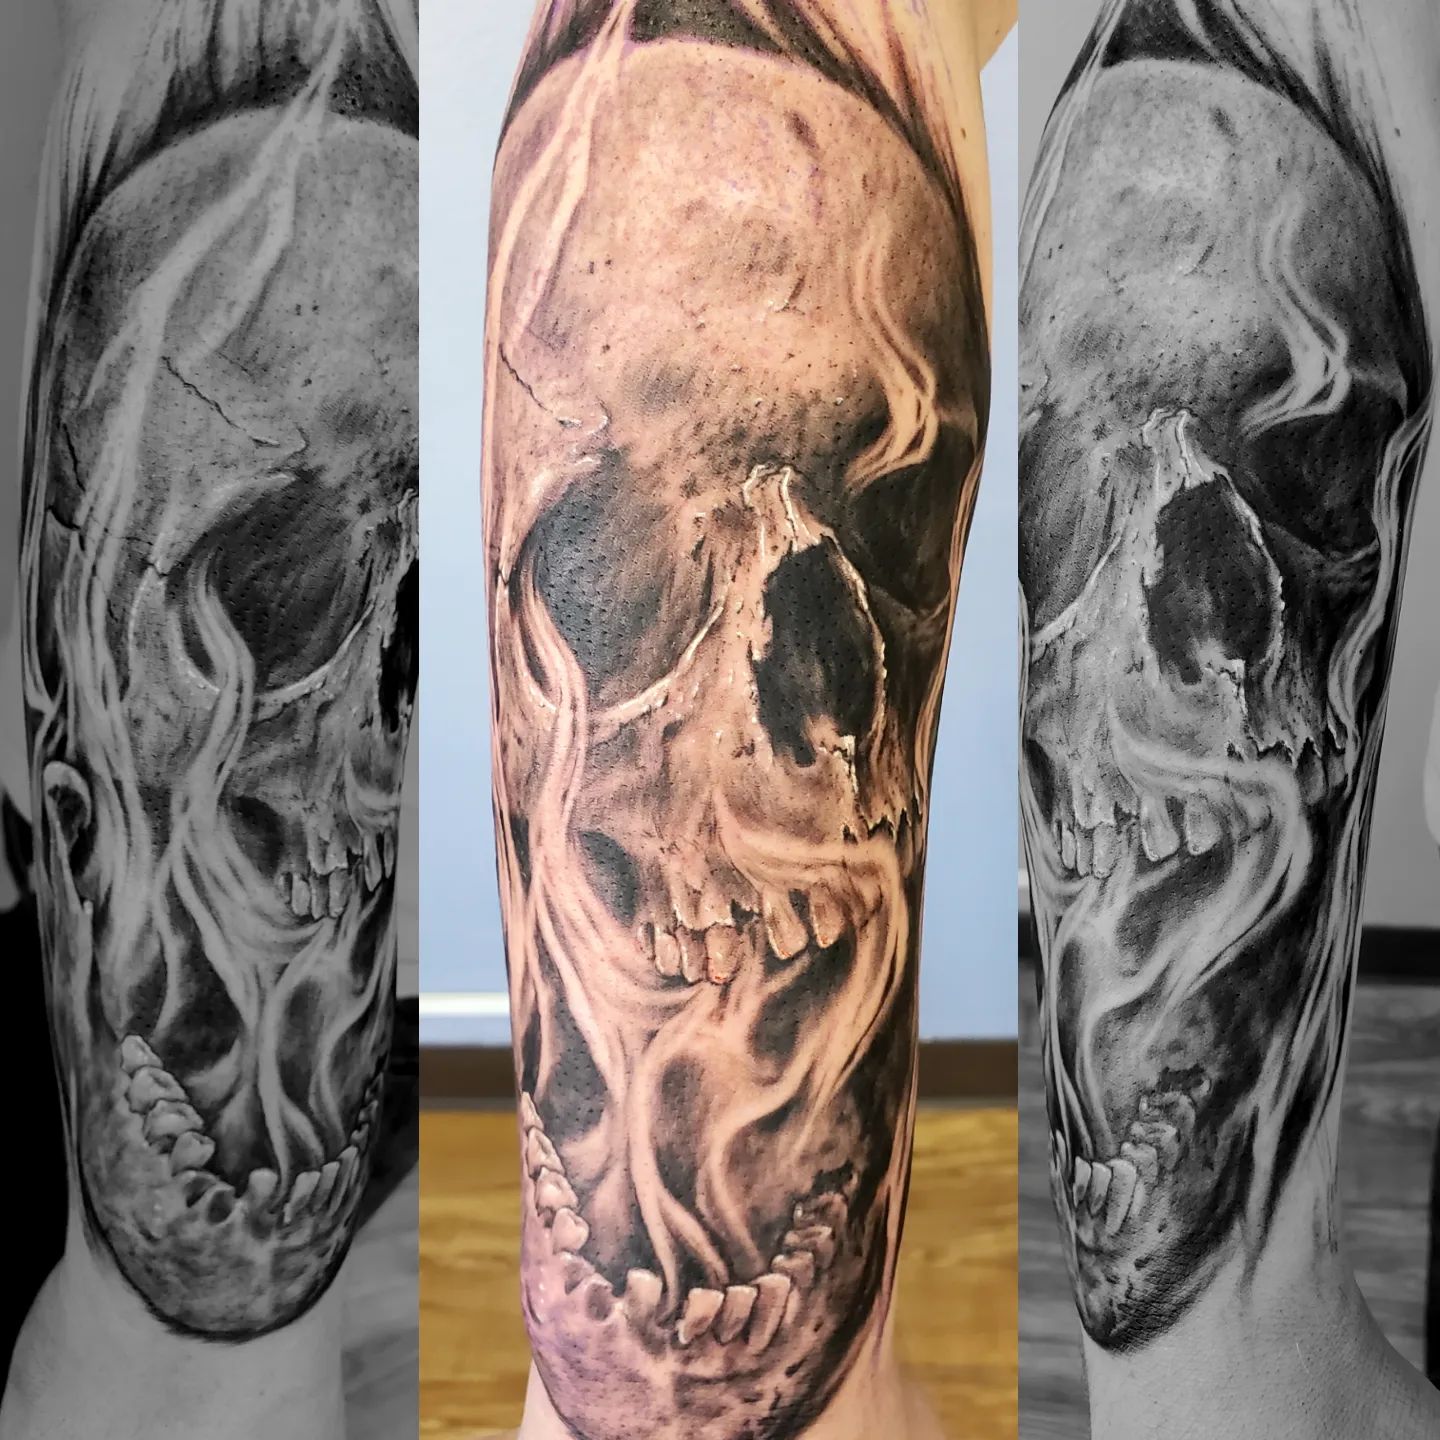 First pass on this rockin little skully done today! 
Done by Justin @Jukzta 💀💀

#skull #art #skulls #skullart #tattoo #skulltattoo #skeleton #blackandgrey #ink #artist #illustration #darkart #artwork #tattoos #handmade #dark #sketch #bones #death #horror #chambana #cutattoo #Jukzta #design #inked #skullartwork #calavera #skulllove #black